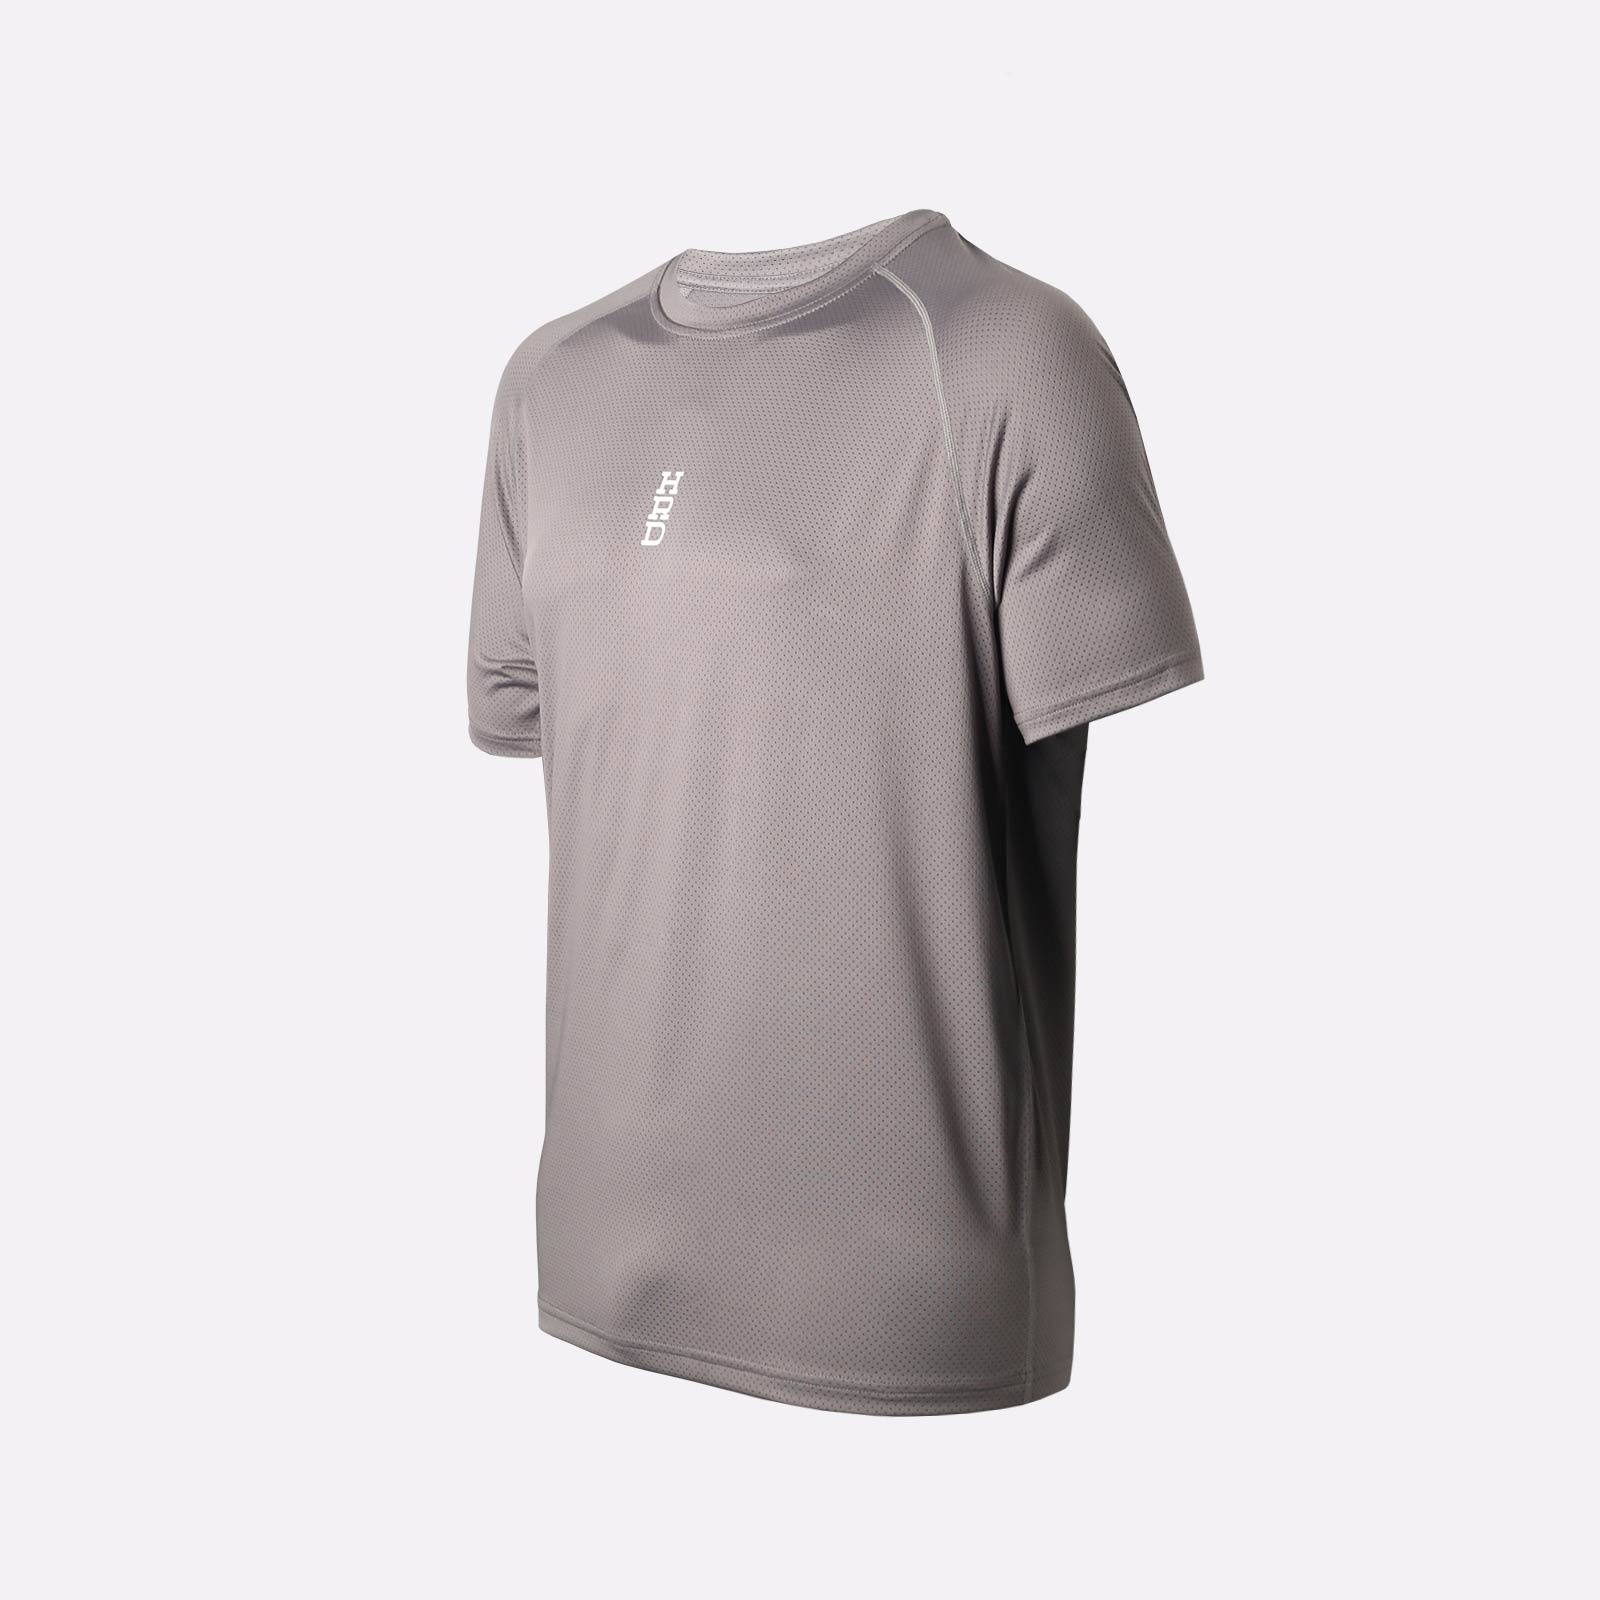 мужская серая футболка Hard TR03 HR-TR03-grey - цена, описание, фото 1